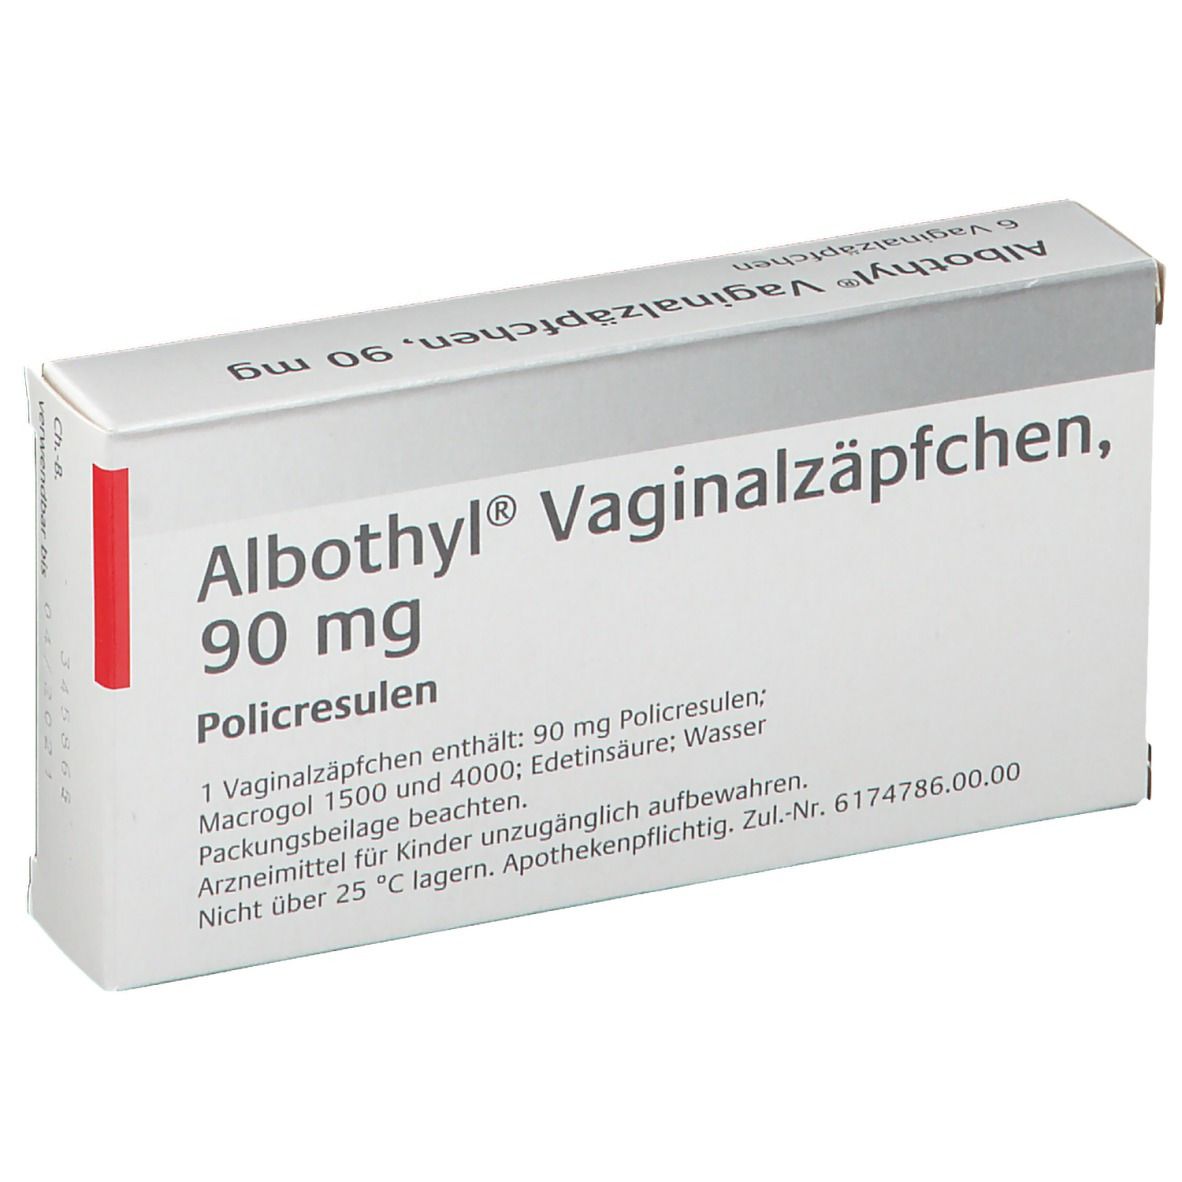 Albothyl® Vaginalzäpfchen